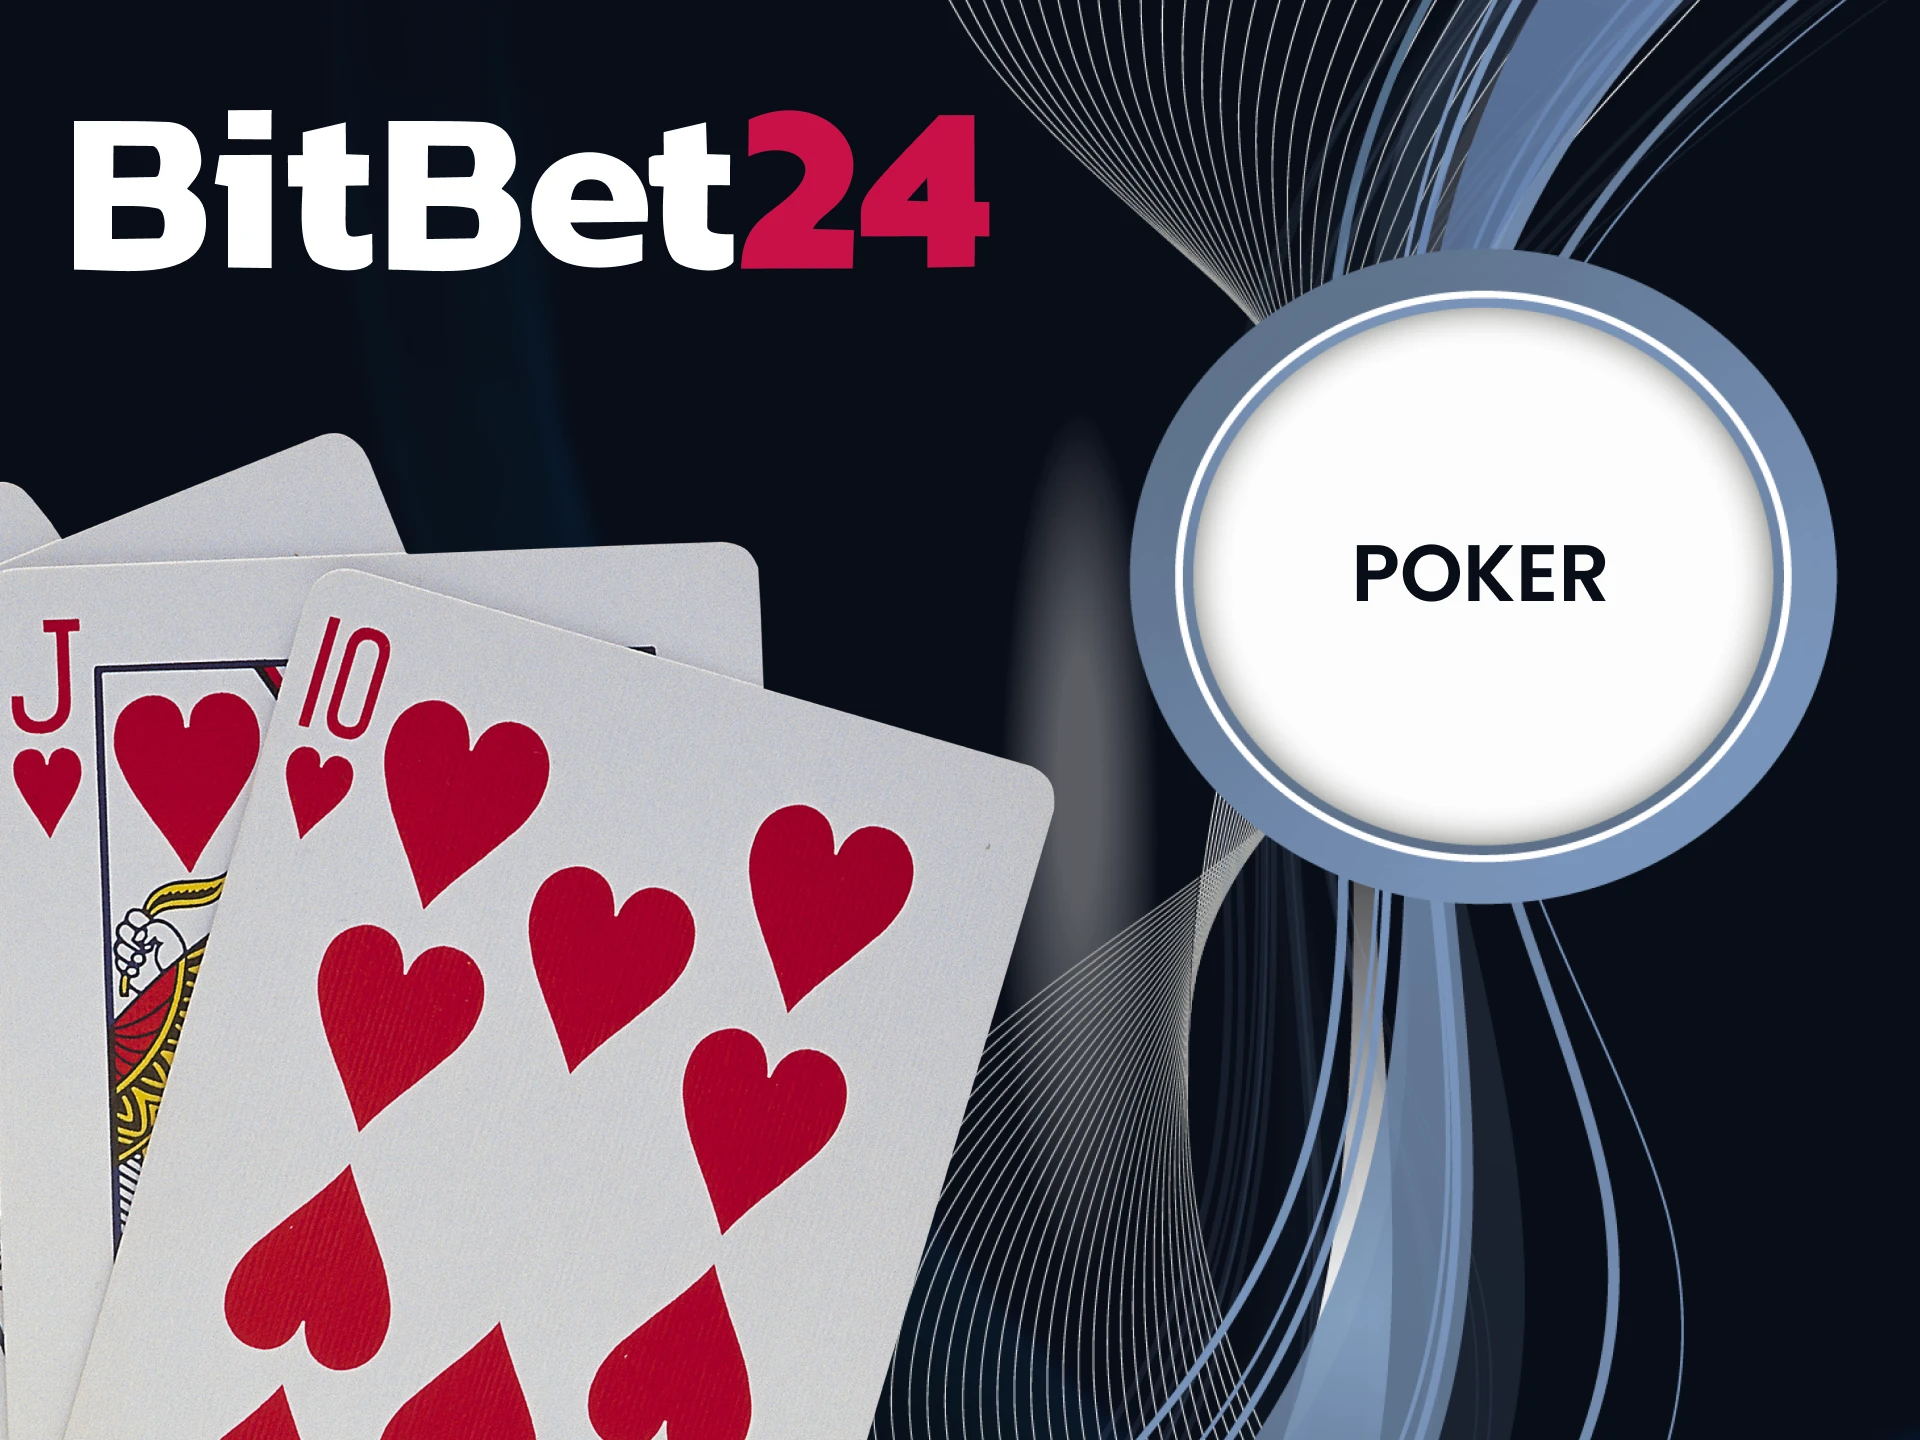 Play poker at BitBet24.